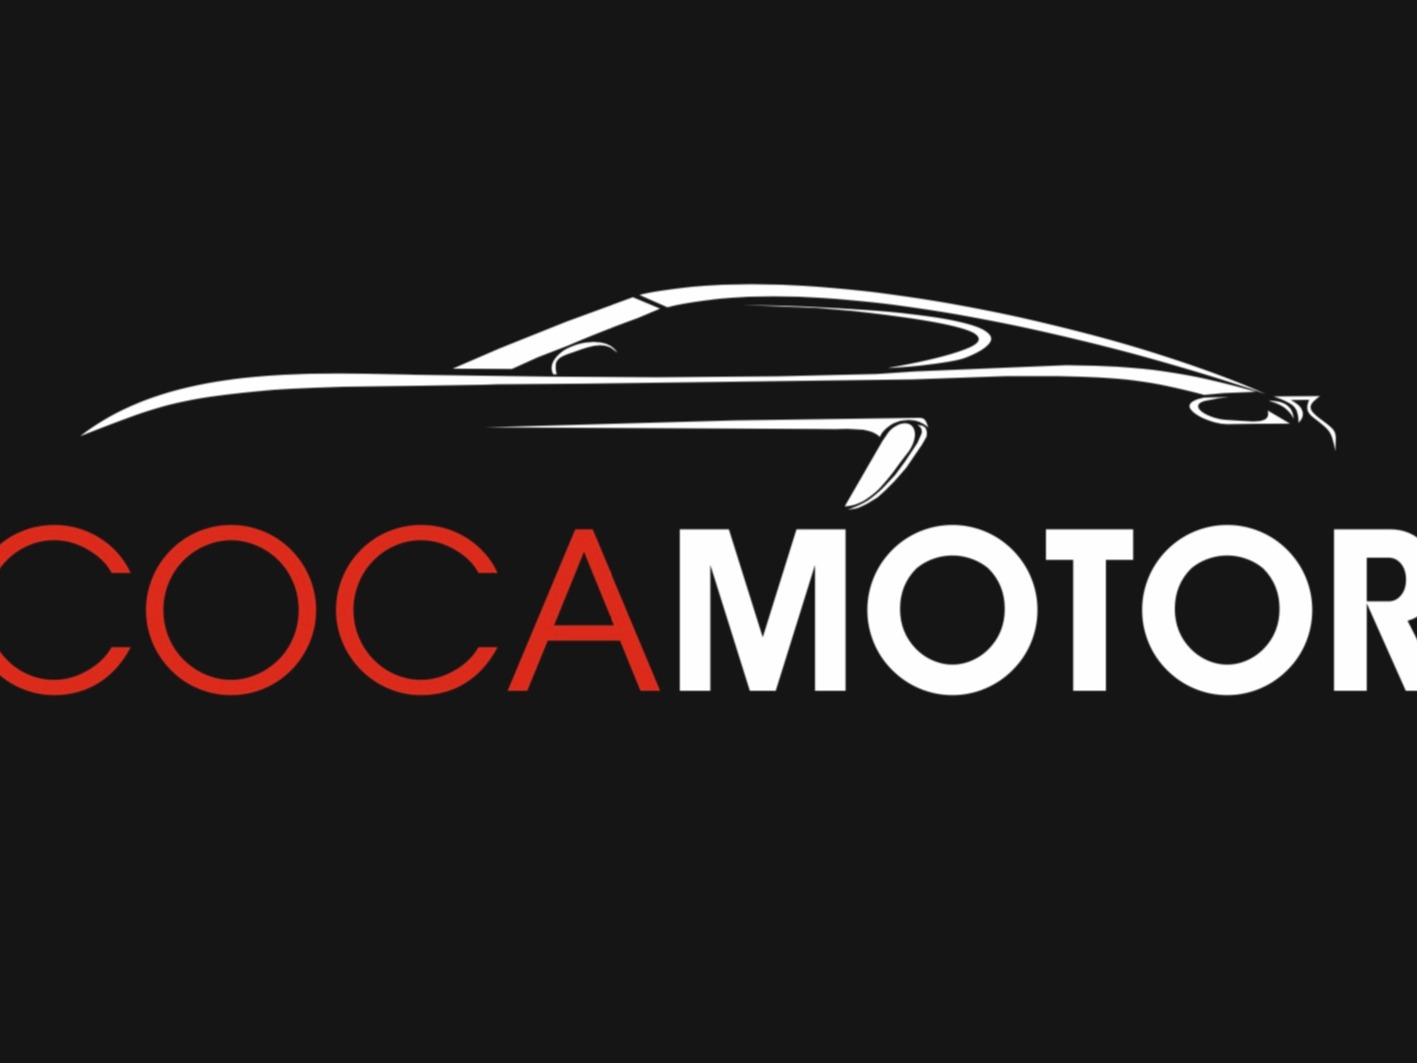 logo de Coca Motor